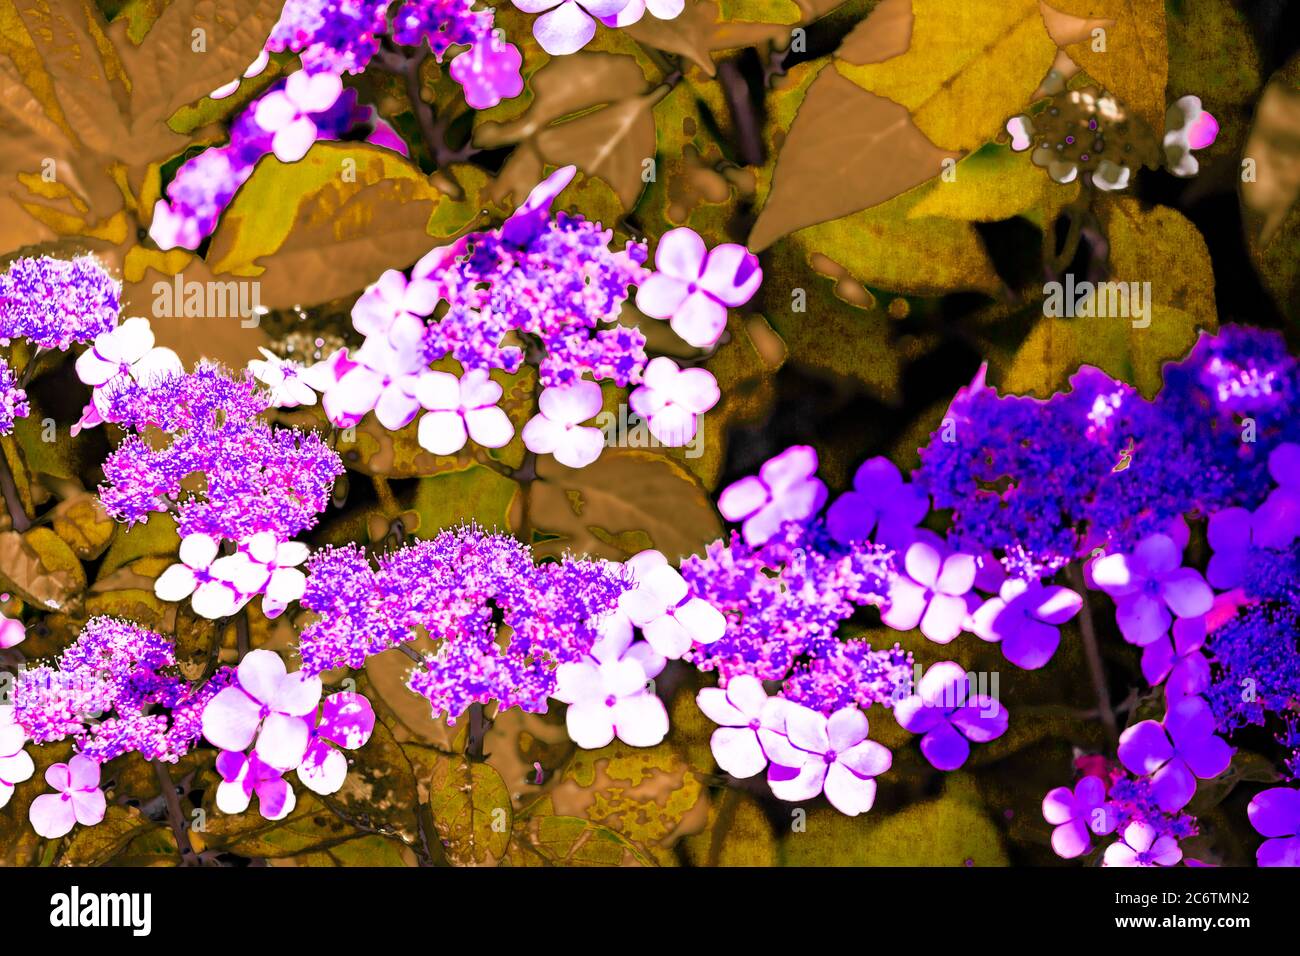 Dettagli vivaci e colorati dei fiori Foto Stock